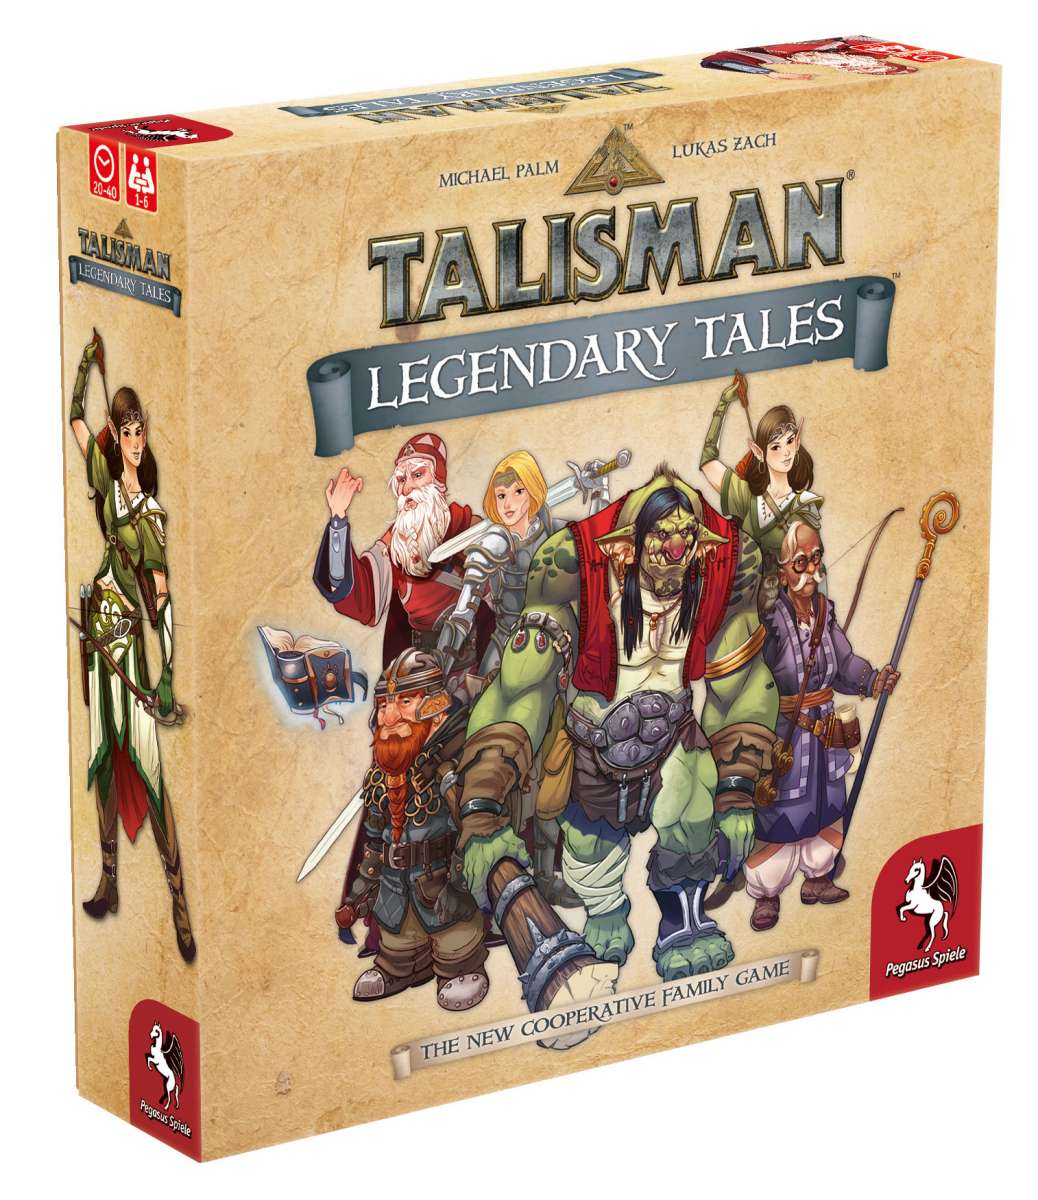 Talisman Legendary Tales